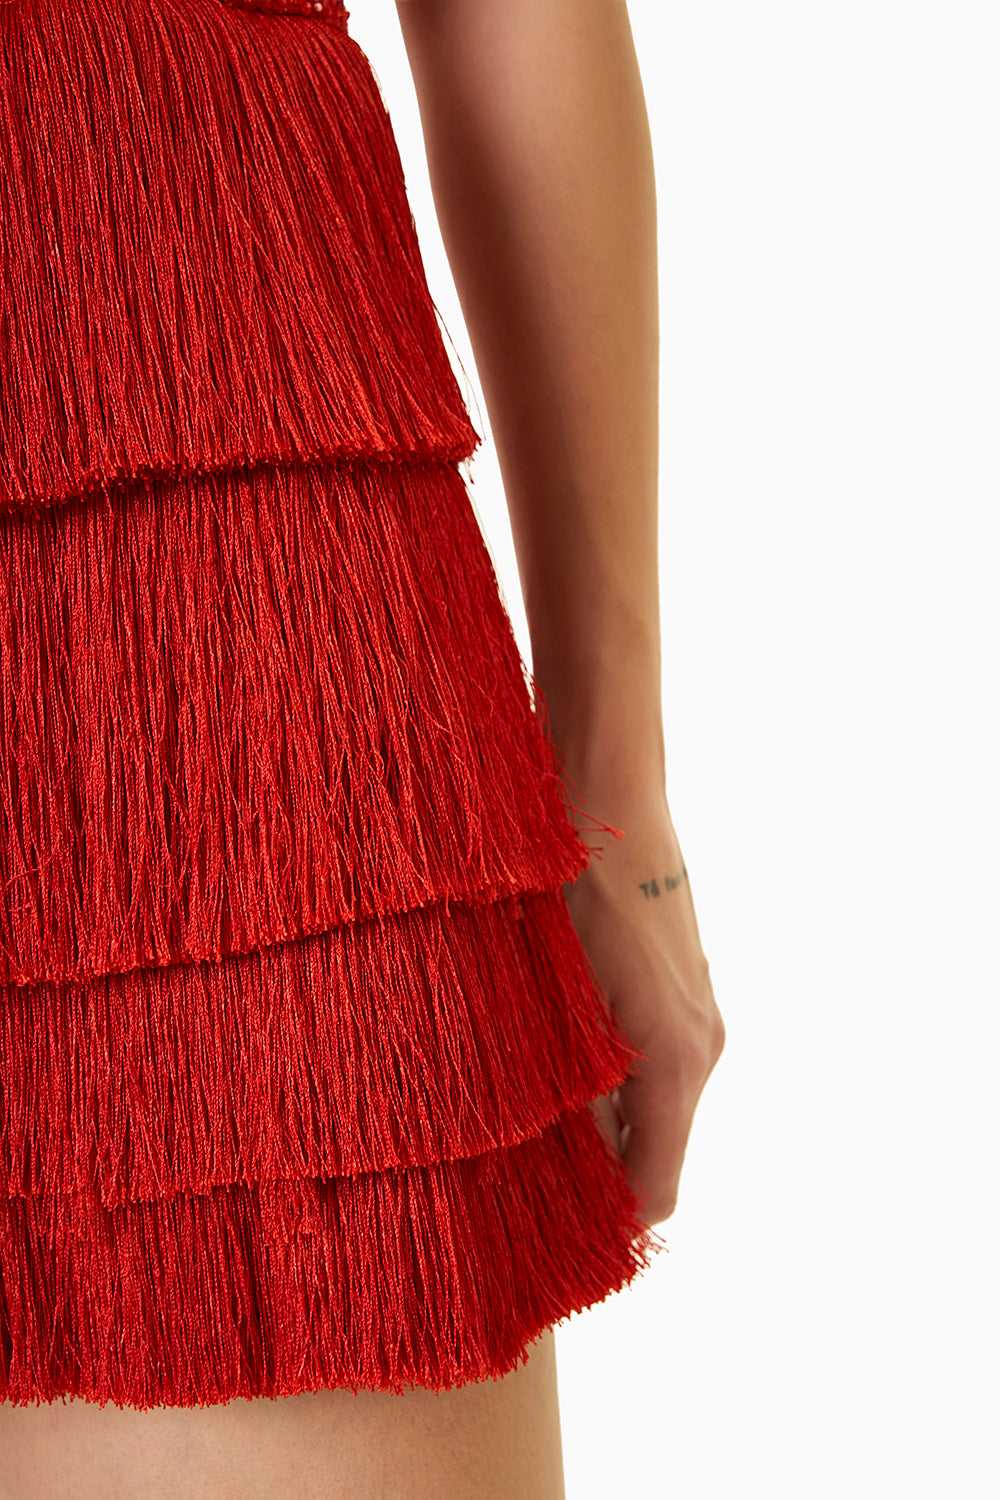 Red Fringes Short Dress